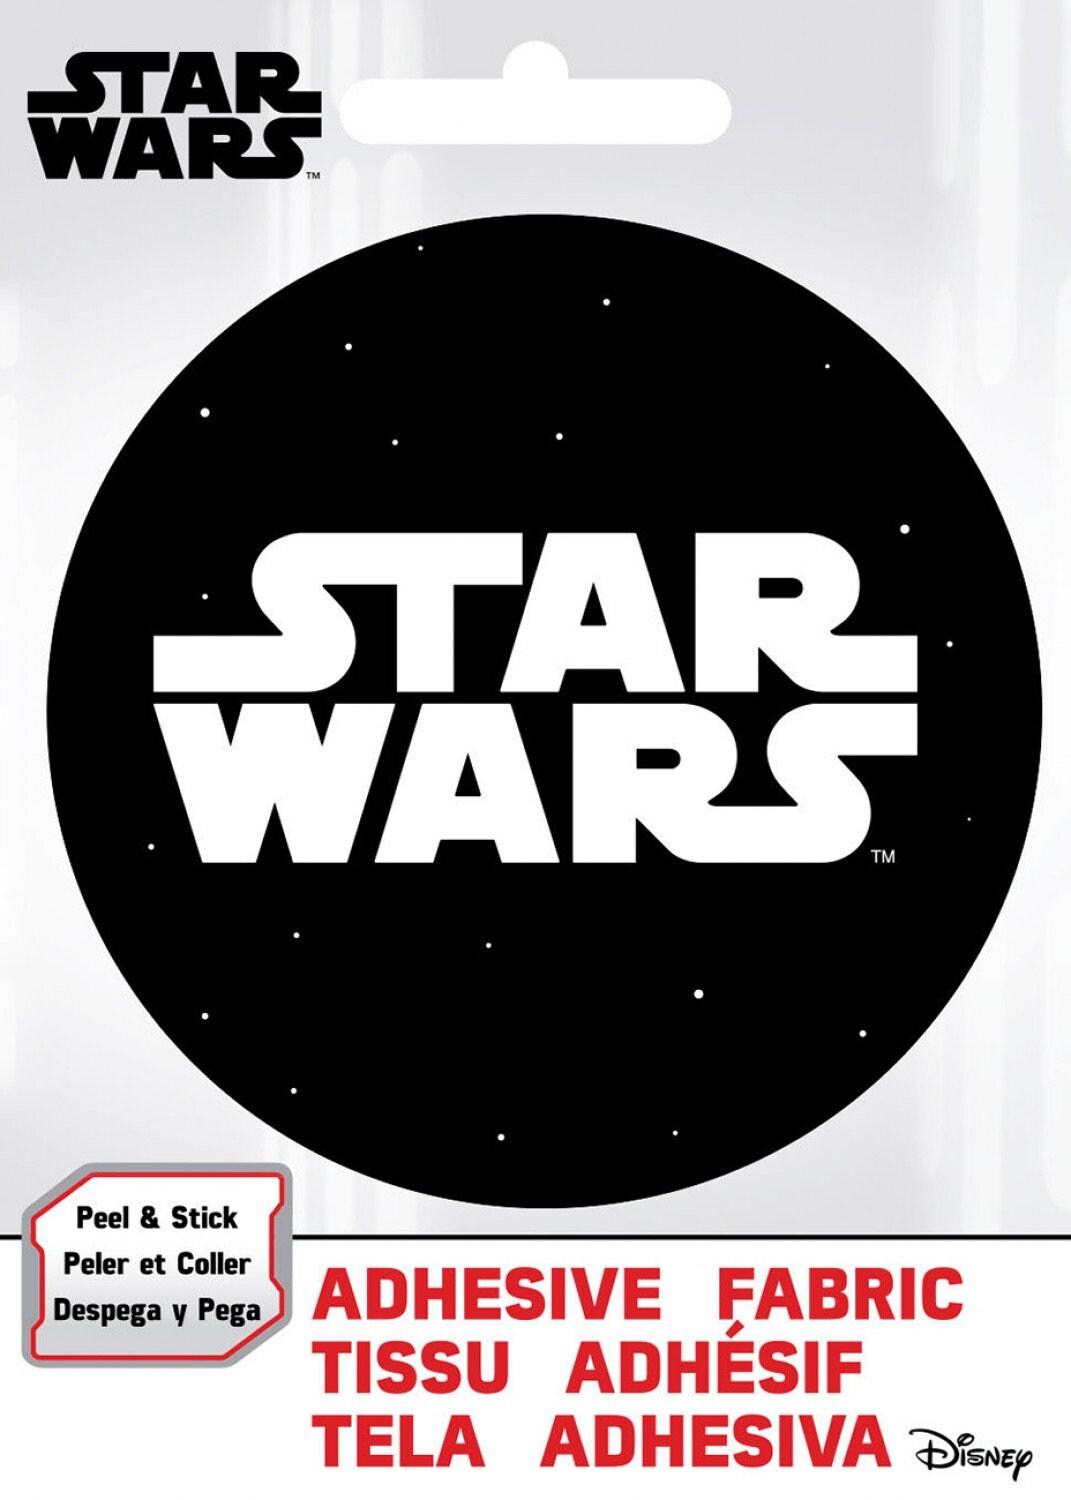 Ad Fab Adhesive Badge Star Wars Logo Adhesive Fabric 3" Badge 73010421X 100% Polyester